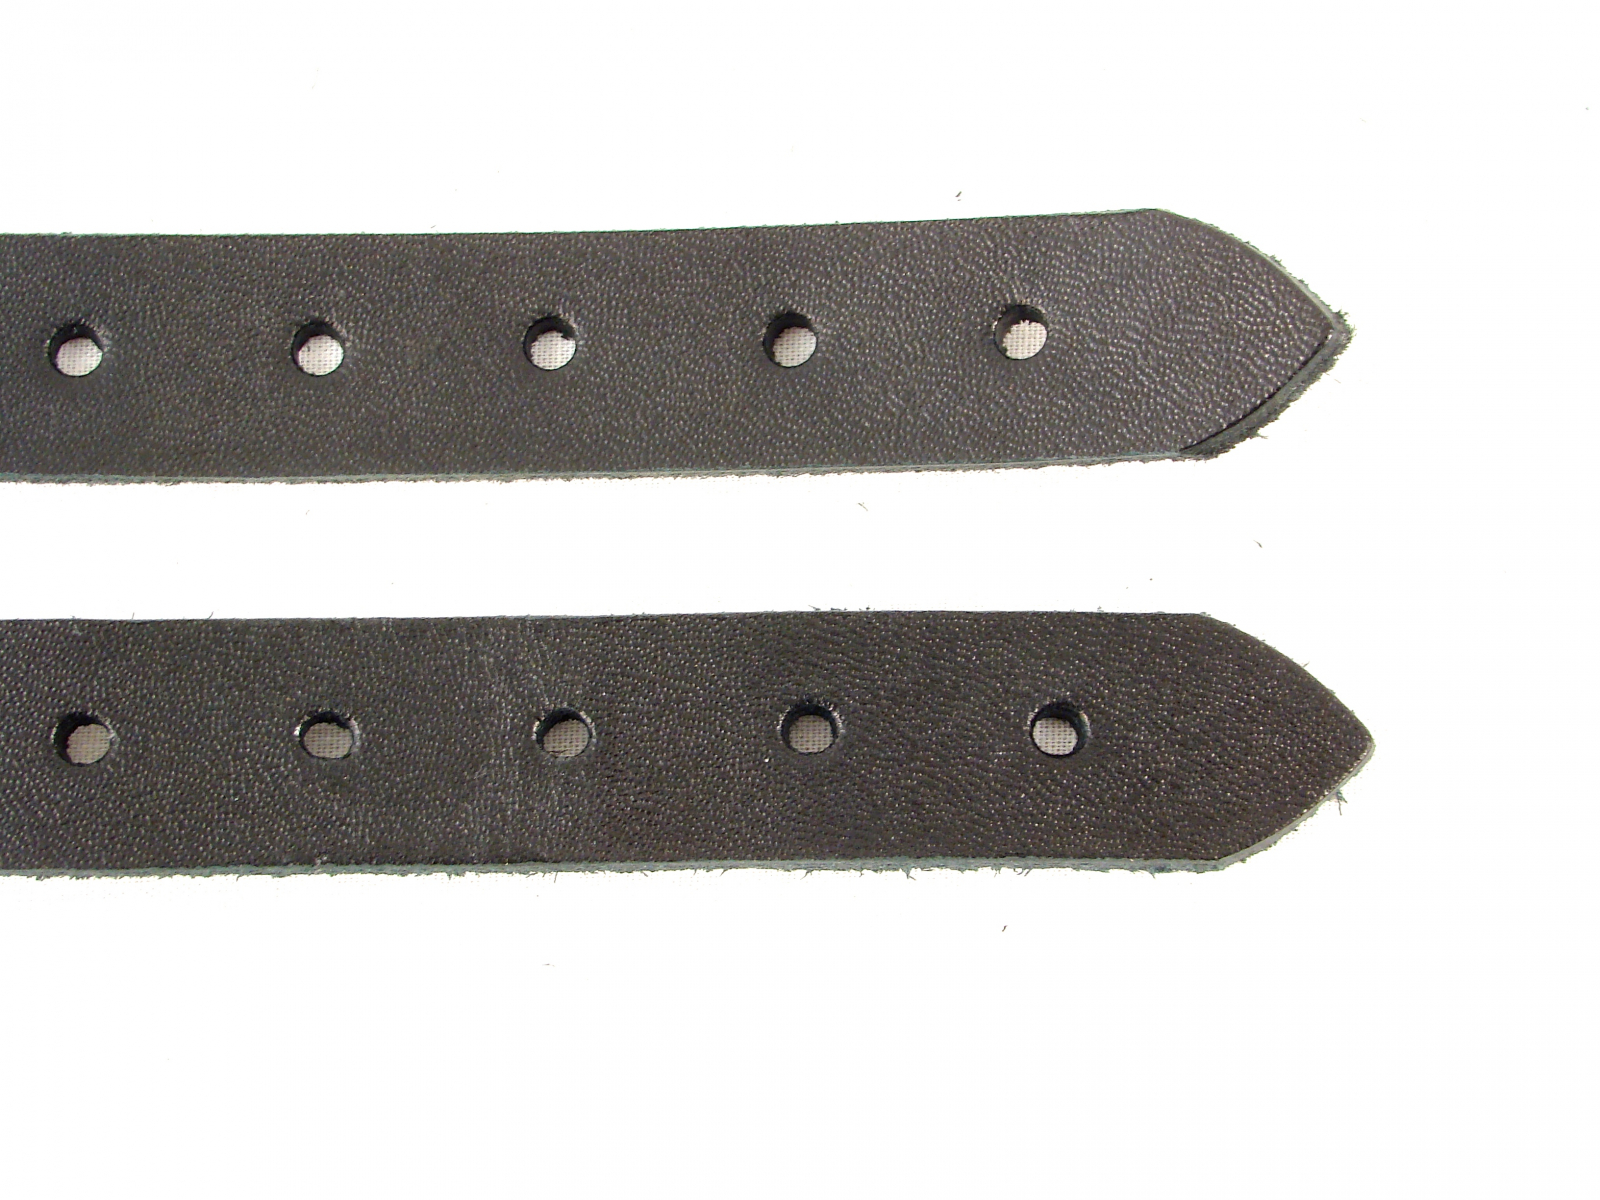 Kilt Extender Straps 5/8 inch width, Kilt Buckle Straps for Tight Kilt